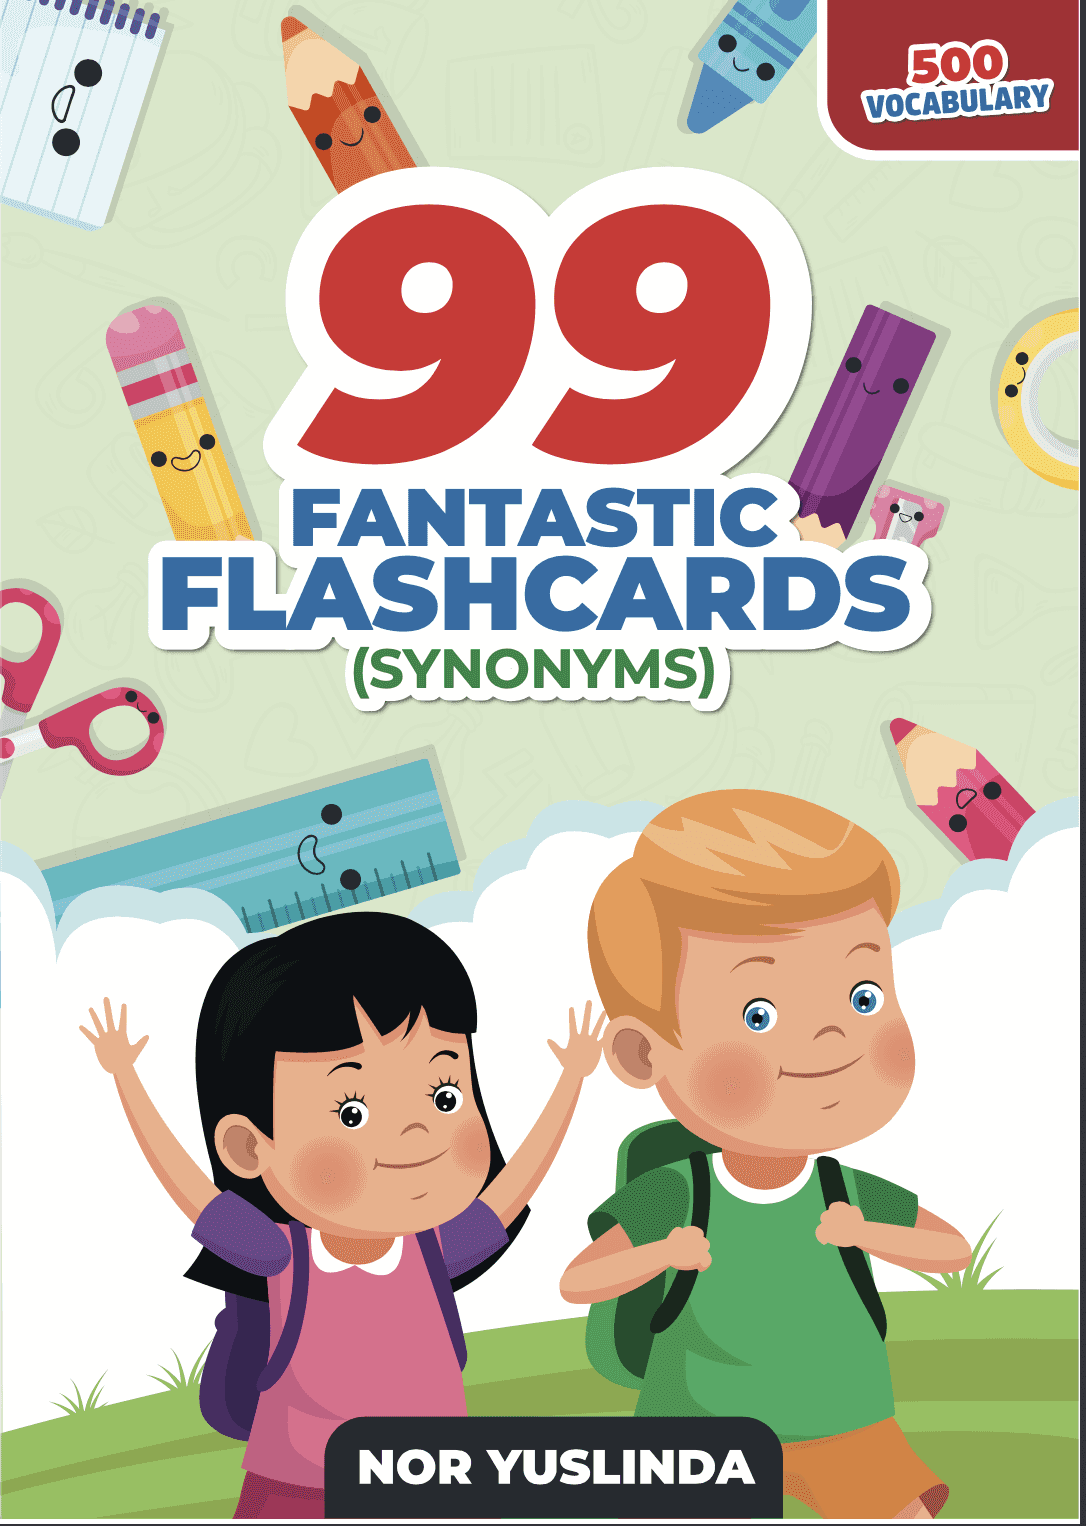 99 fantastic flashcards synonyms